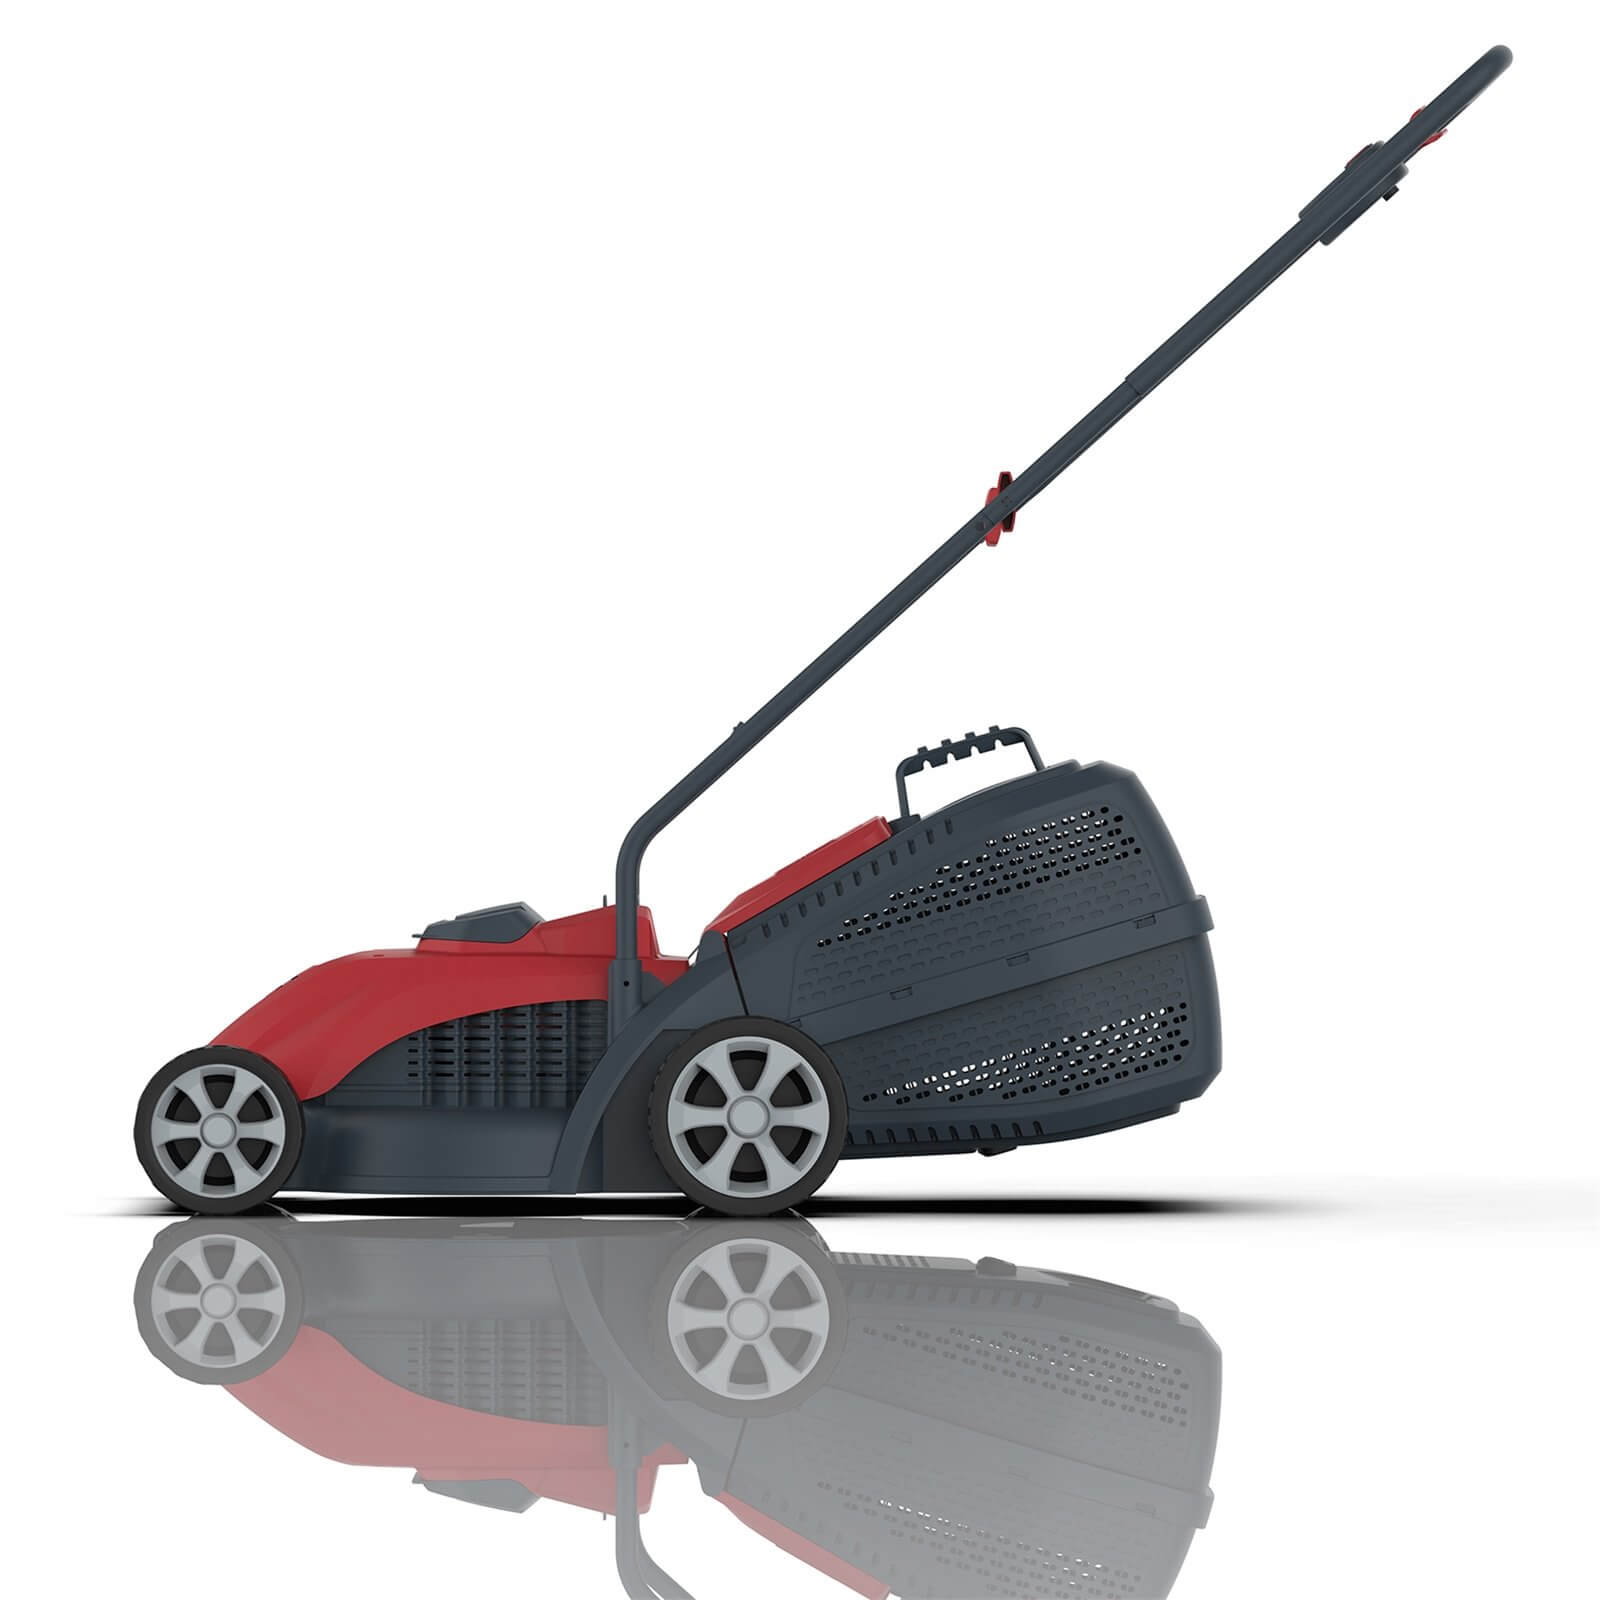 Sovereign 18V Cordless Lawn Mower - 32cm